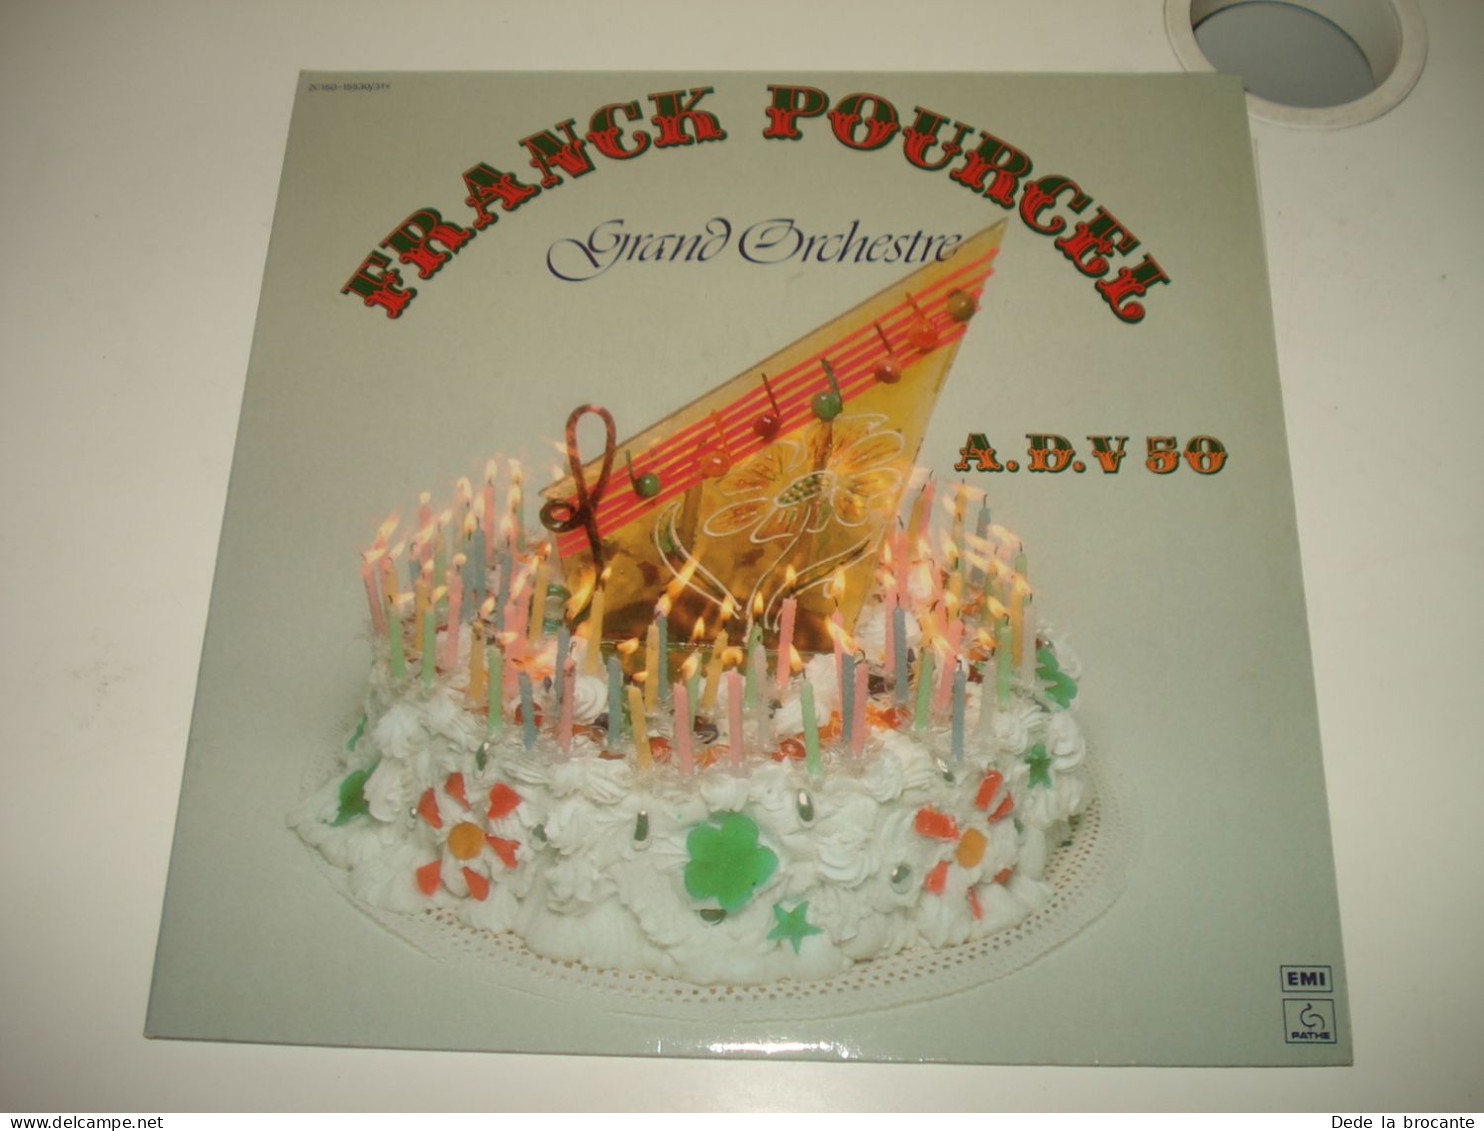 B14 / Franck Pourcel  Grand Orchestre - 2 X LP – 2C 150-15530/31Y - Fr 1977  M/M - Disco & Pop